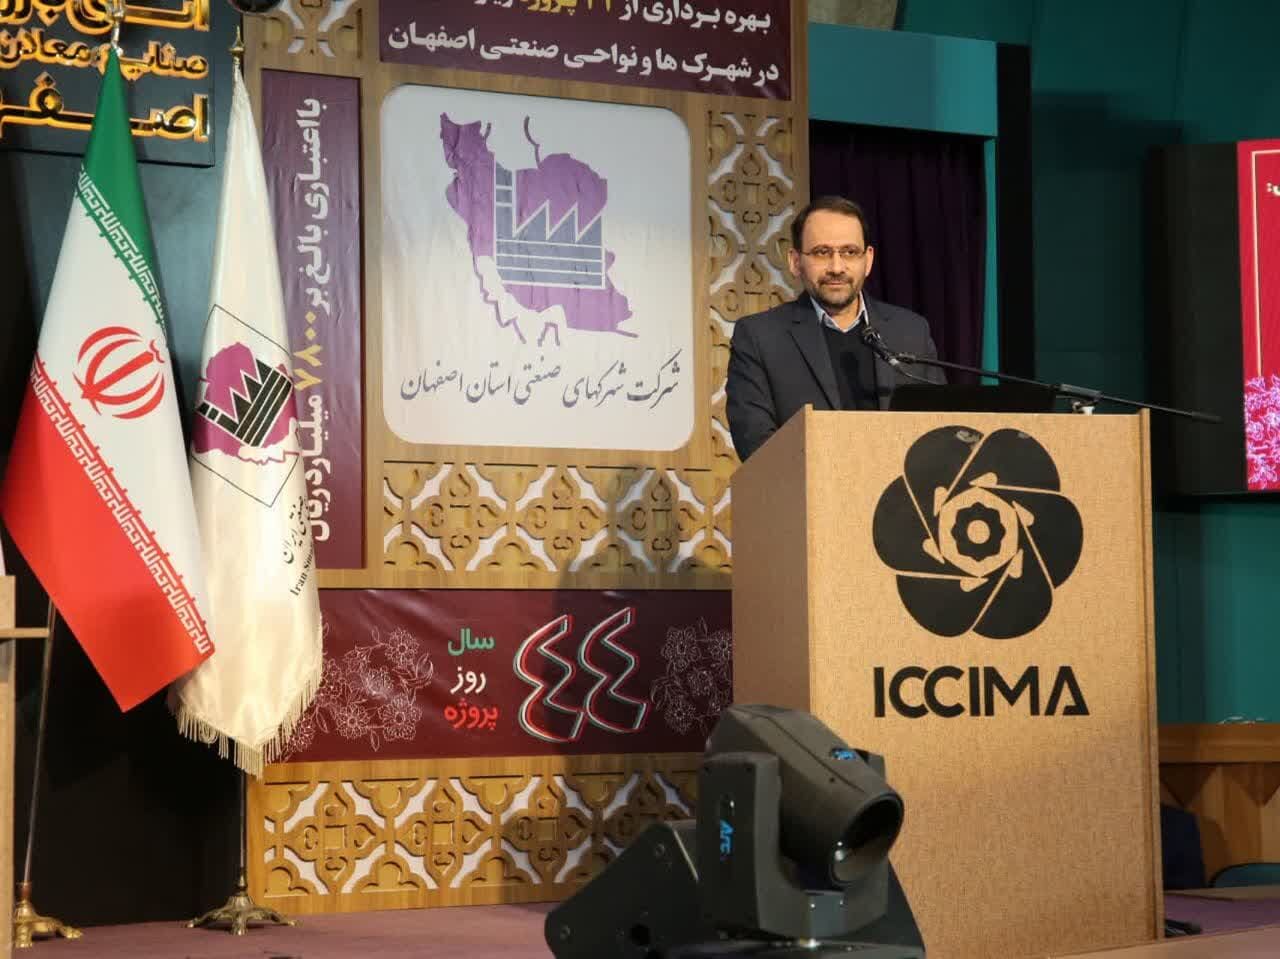 سه اَبَر چالش آب، انرژی و هوا در اصفهان وجود دارد